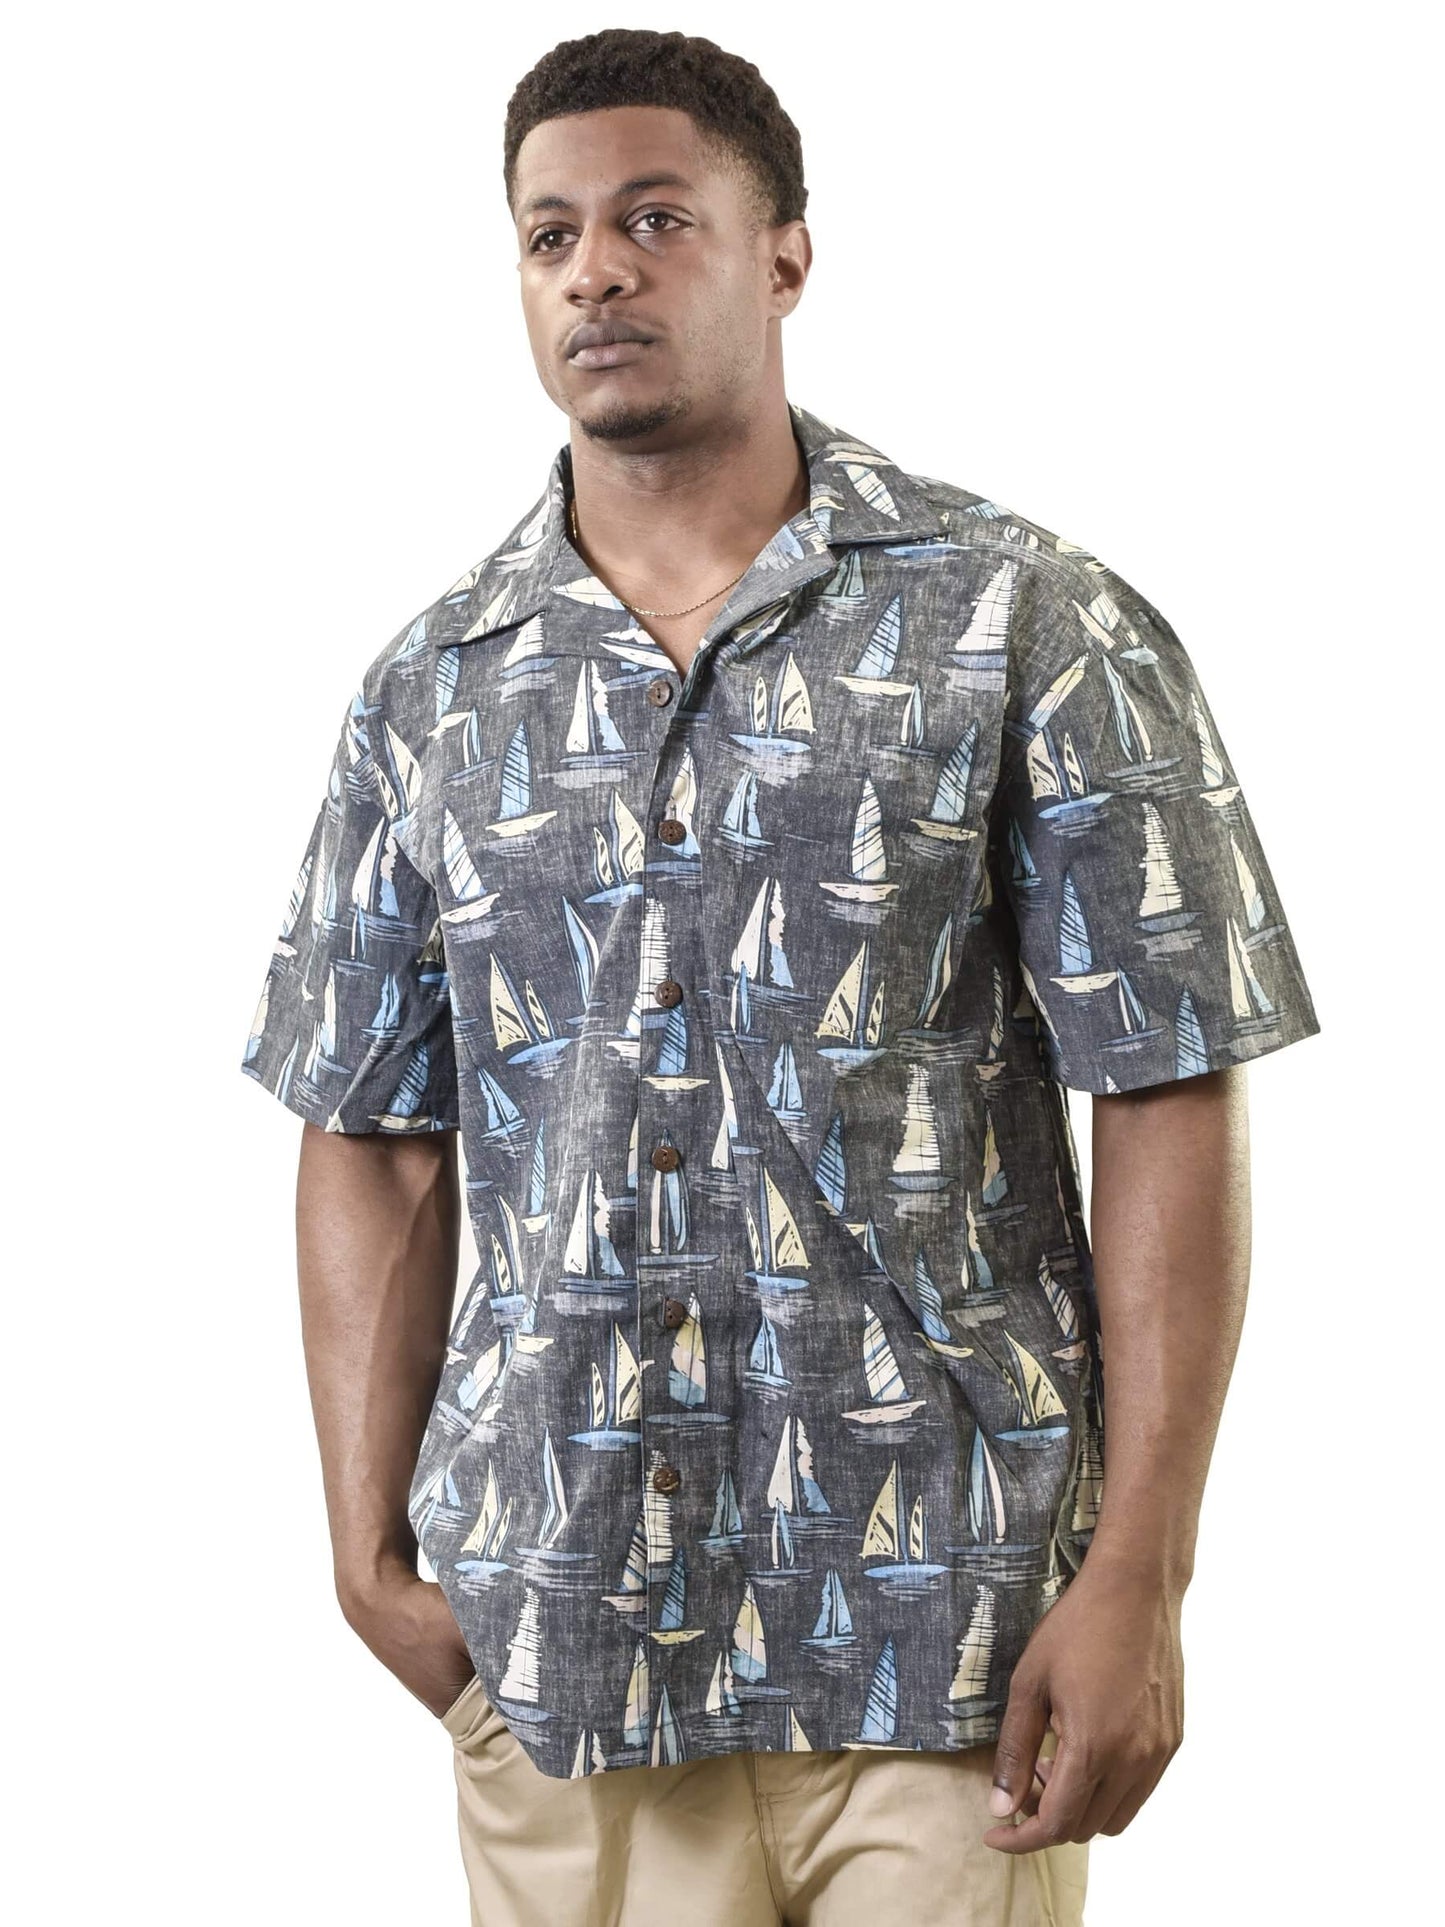 Men's Hawaiian Shirt, Sail Boat